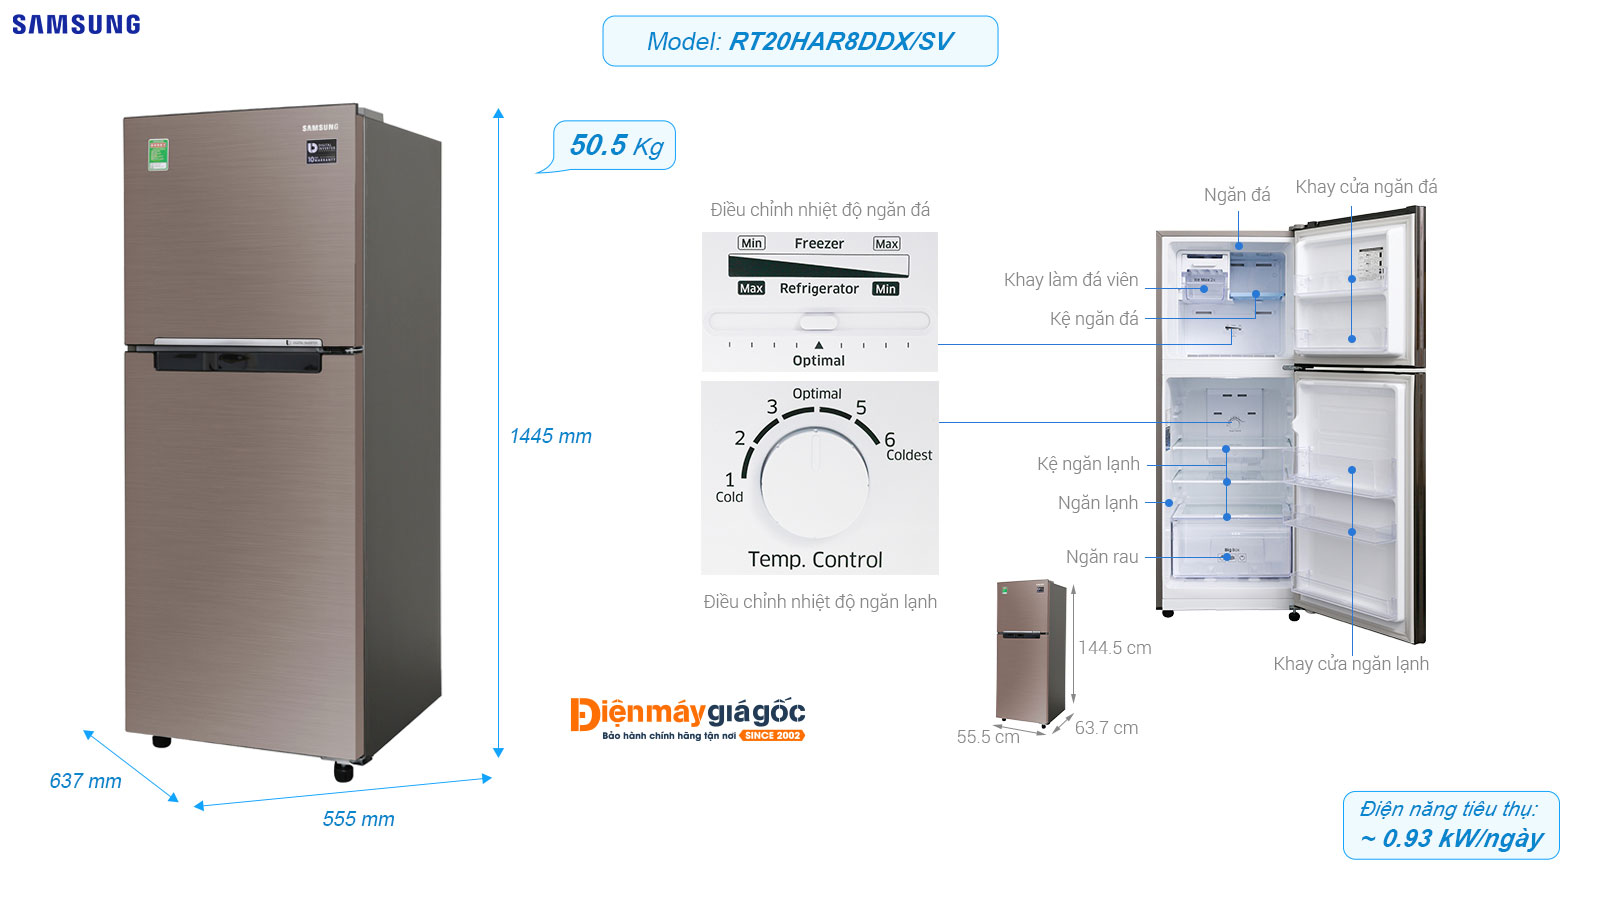 Tủ lạnh Samsung ngăn đá trên 2 cửa Inverter 208 lít RT20HAR8DDX/SV